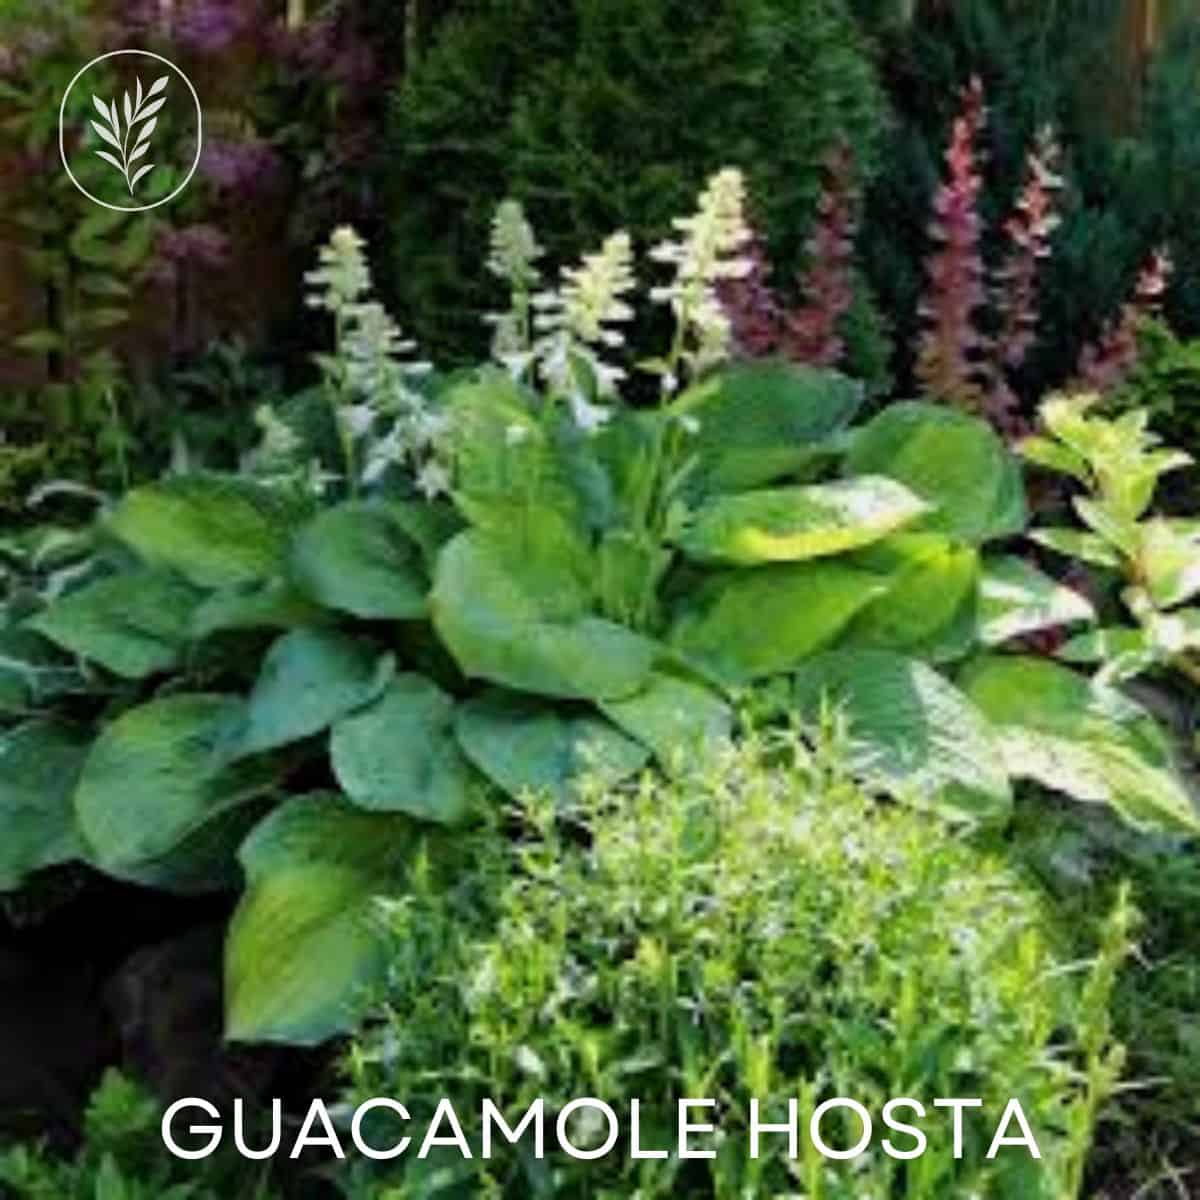 Guacamole hosta via @home4theharvest